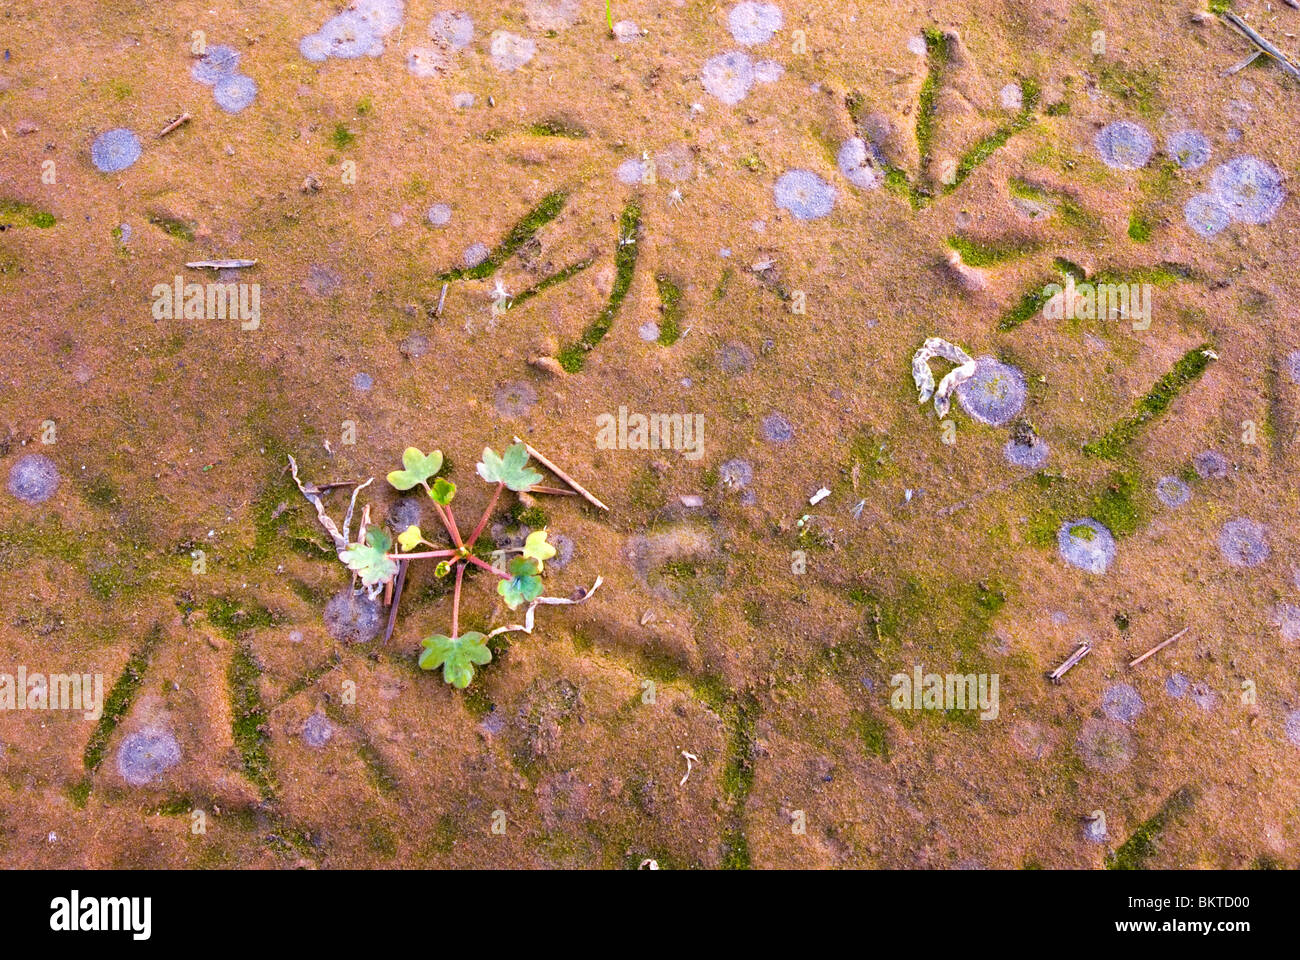 ganzenporen op kleurrijk zeeklei in natuurontwikkelingsgebied de Noordwaard in de Brabantse Biesbosch; goose tracks on colourful clay in naturedevelopment area de Noordwaard in the Biesbosch National Park Stock Photo